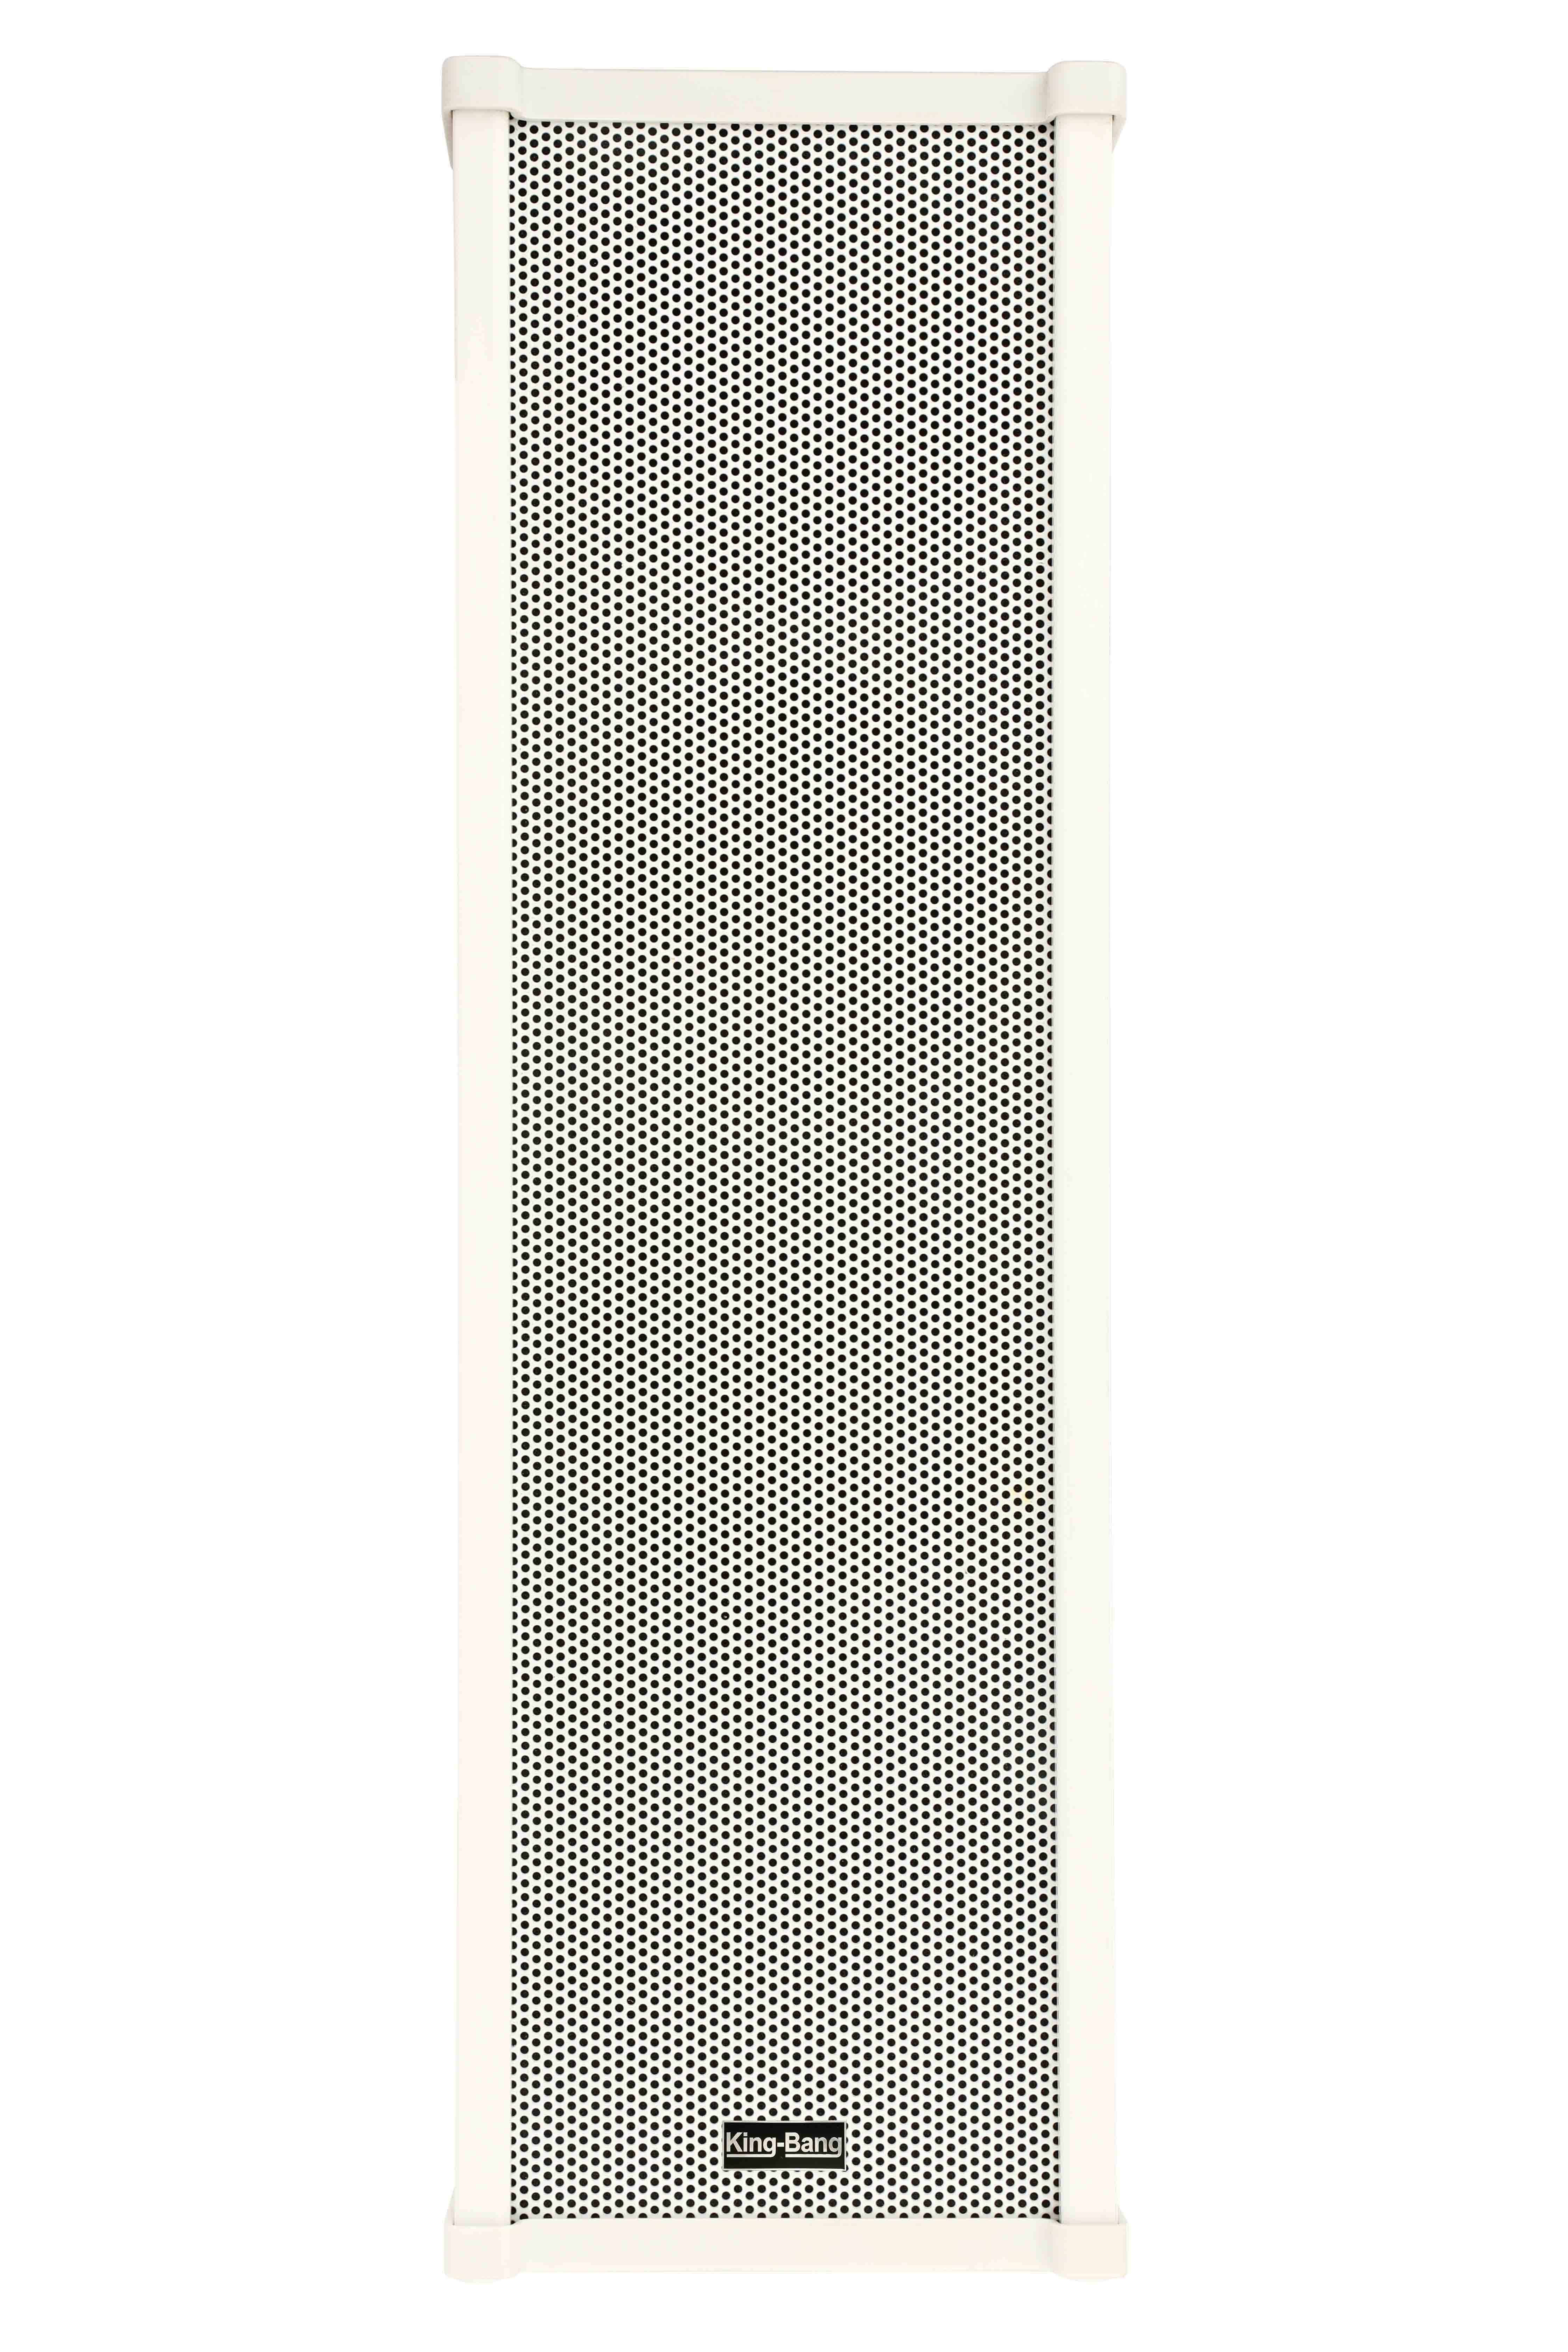 6寸铝合金音柱 （150W）  S-8150Q